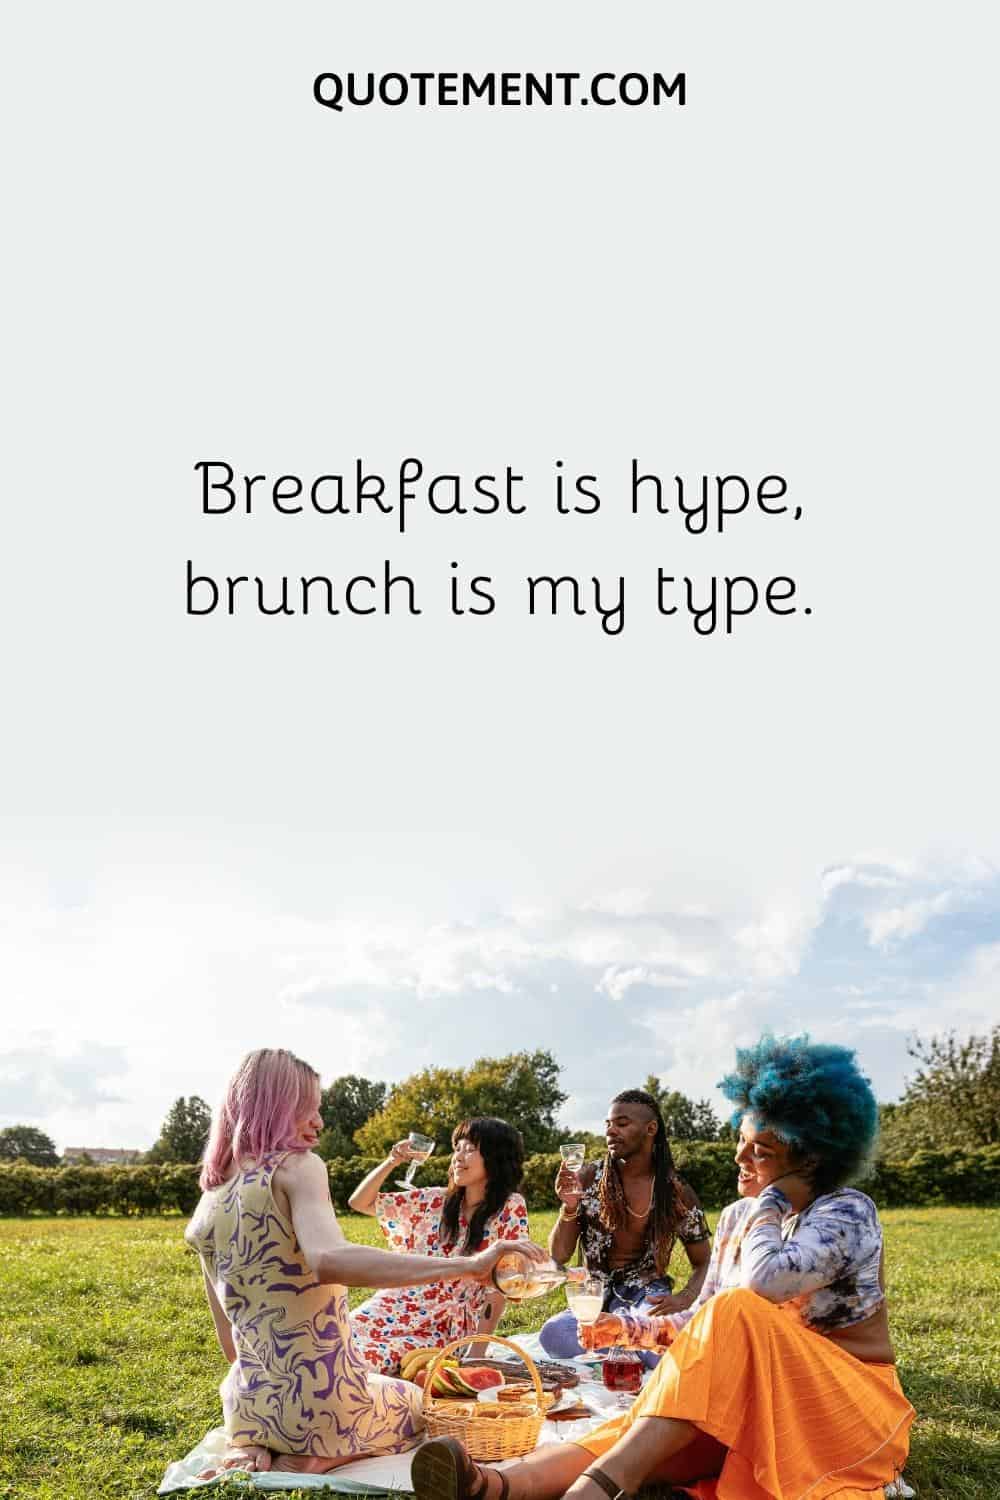 Breakfast is hype, brunch is my type.